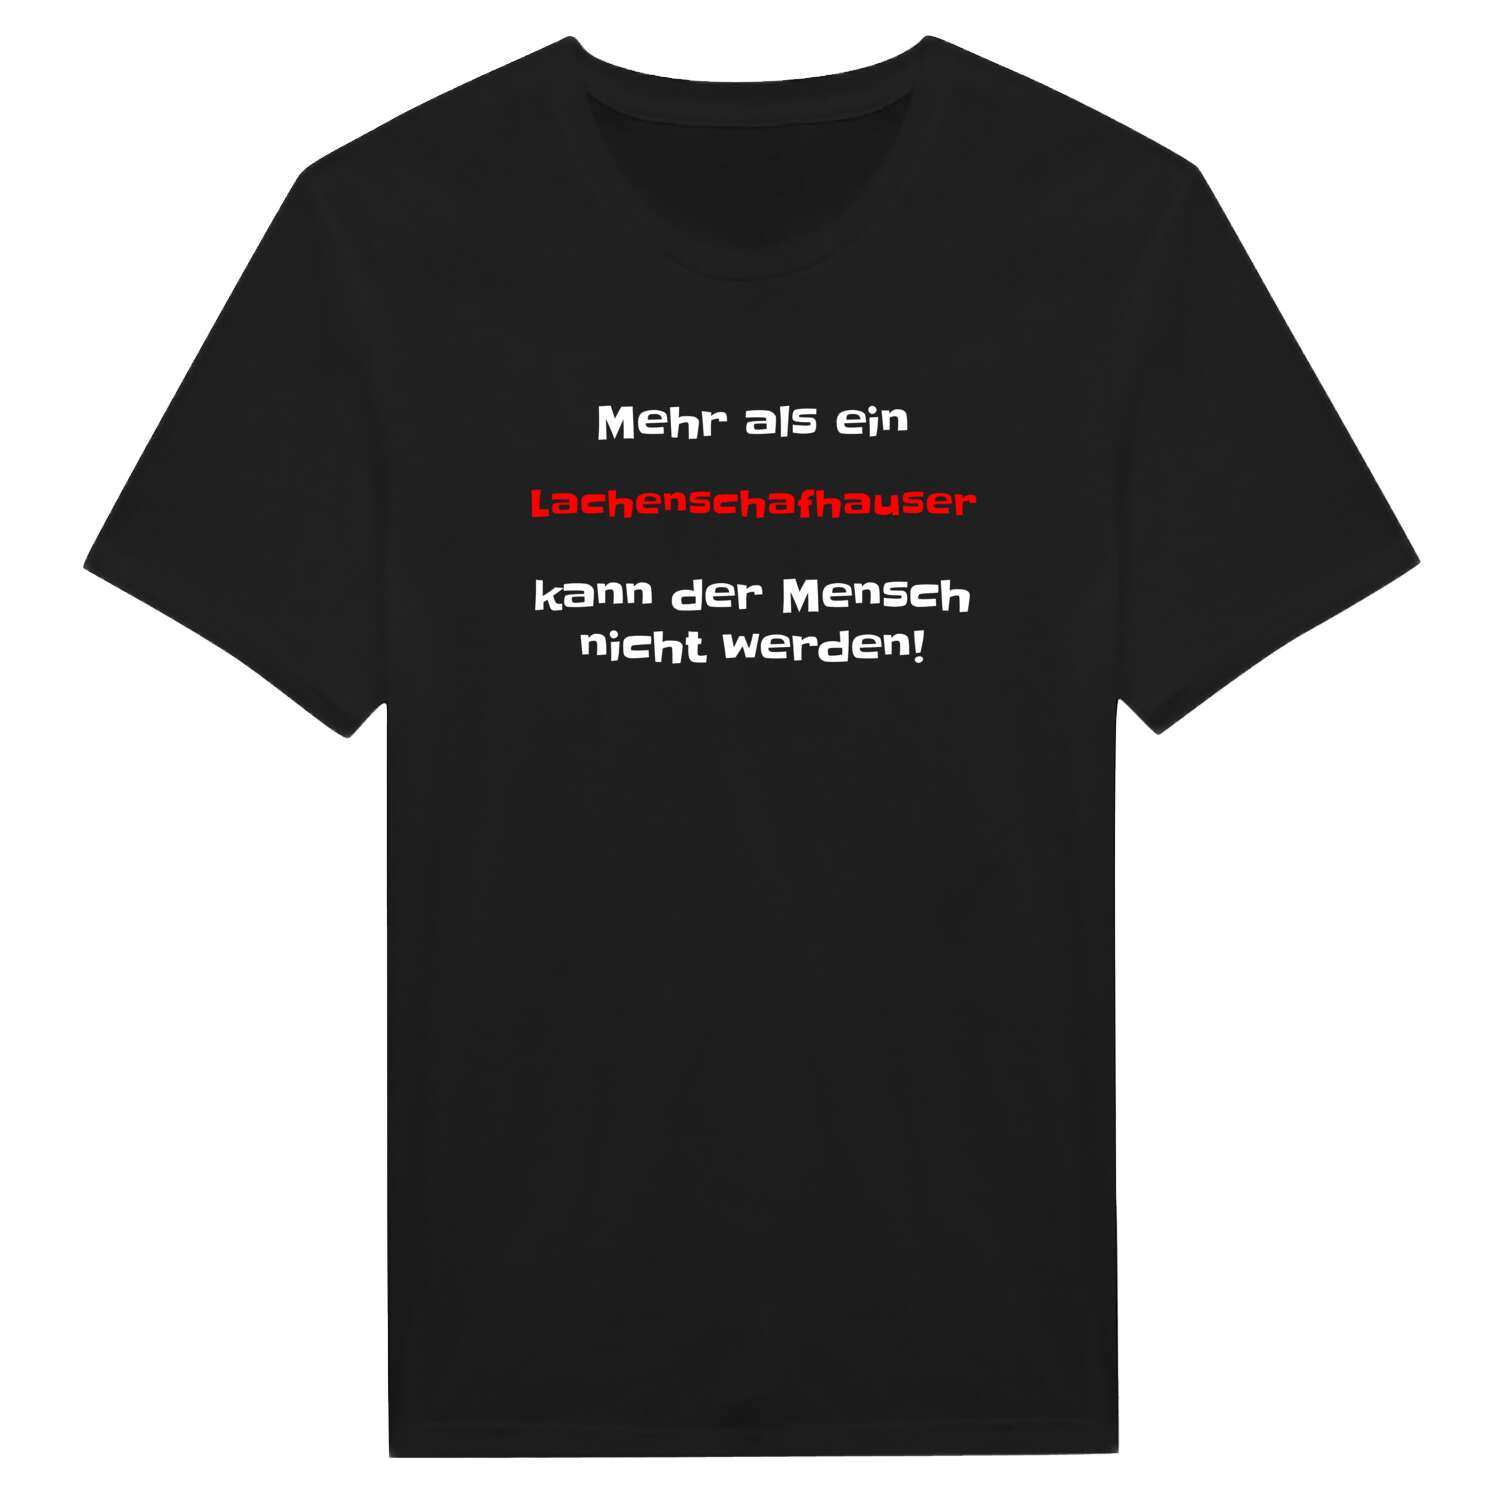 Lachenschafhaus T-Shirt »Mehr als ein«